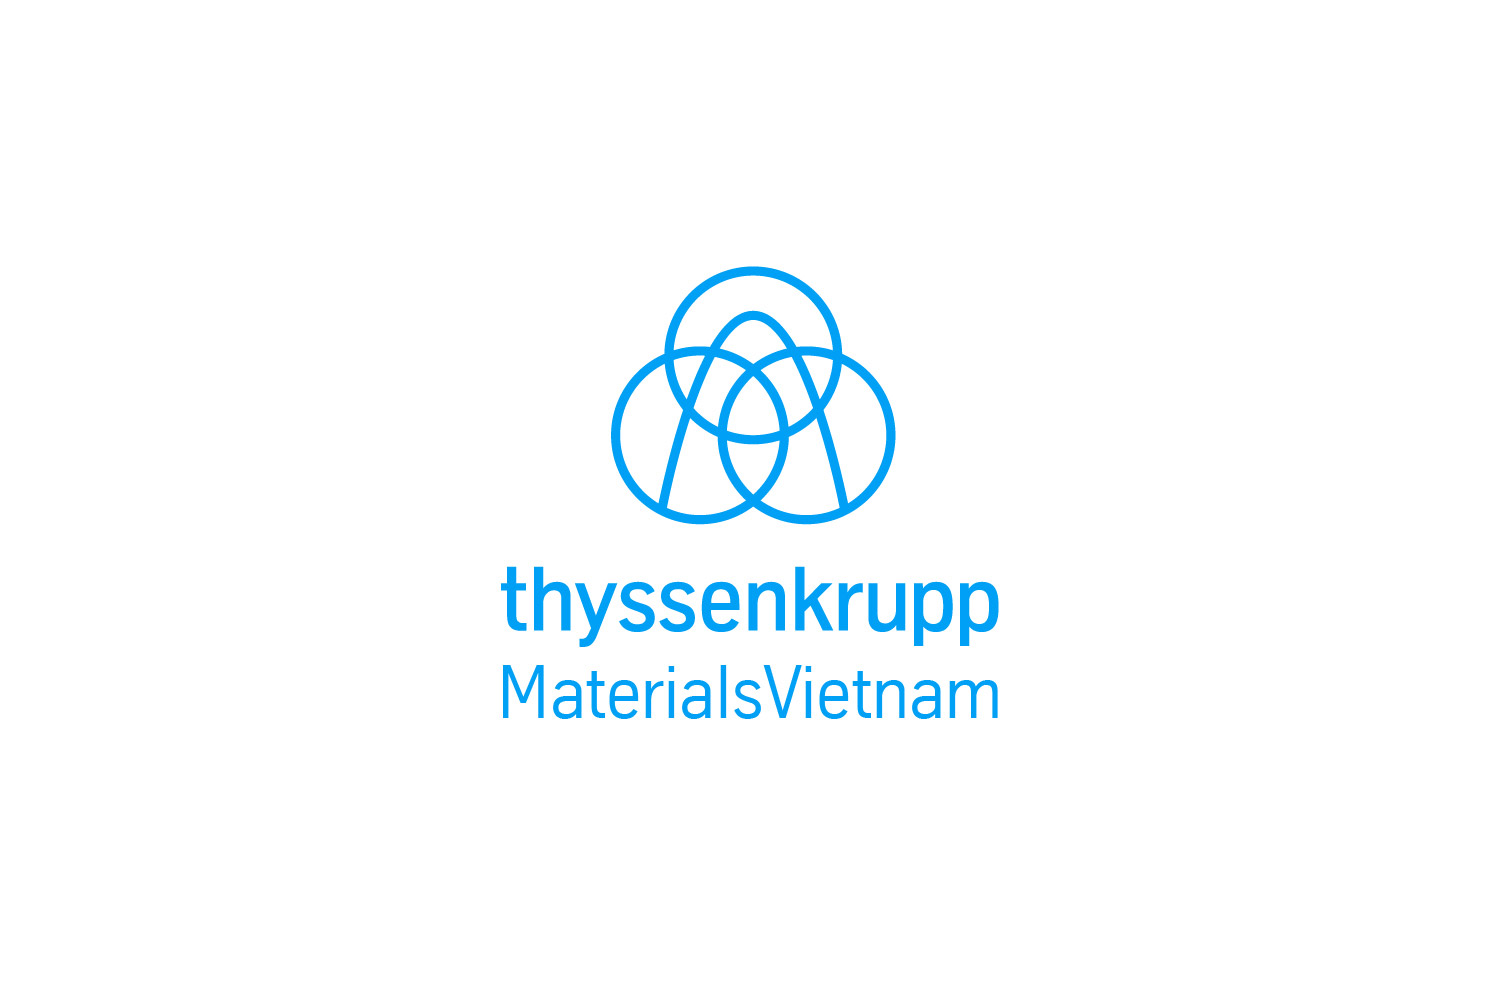 thyssenkrupp materials vietnam logo